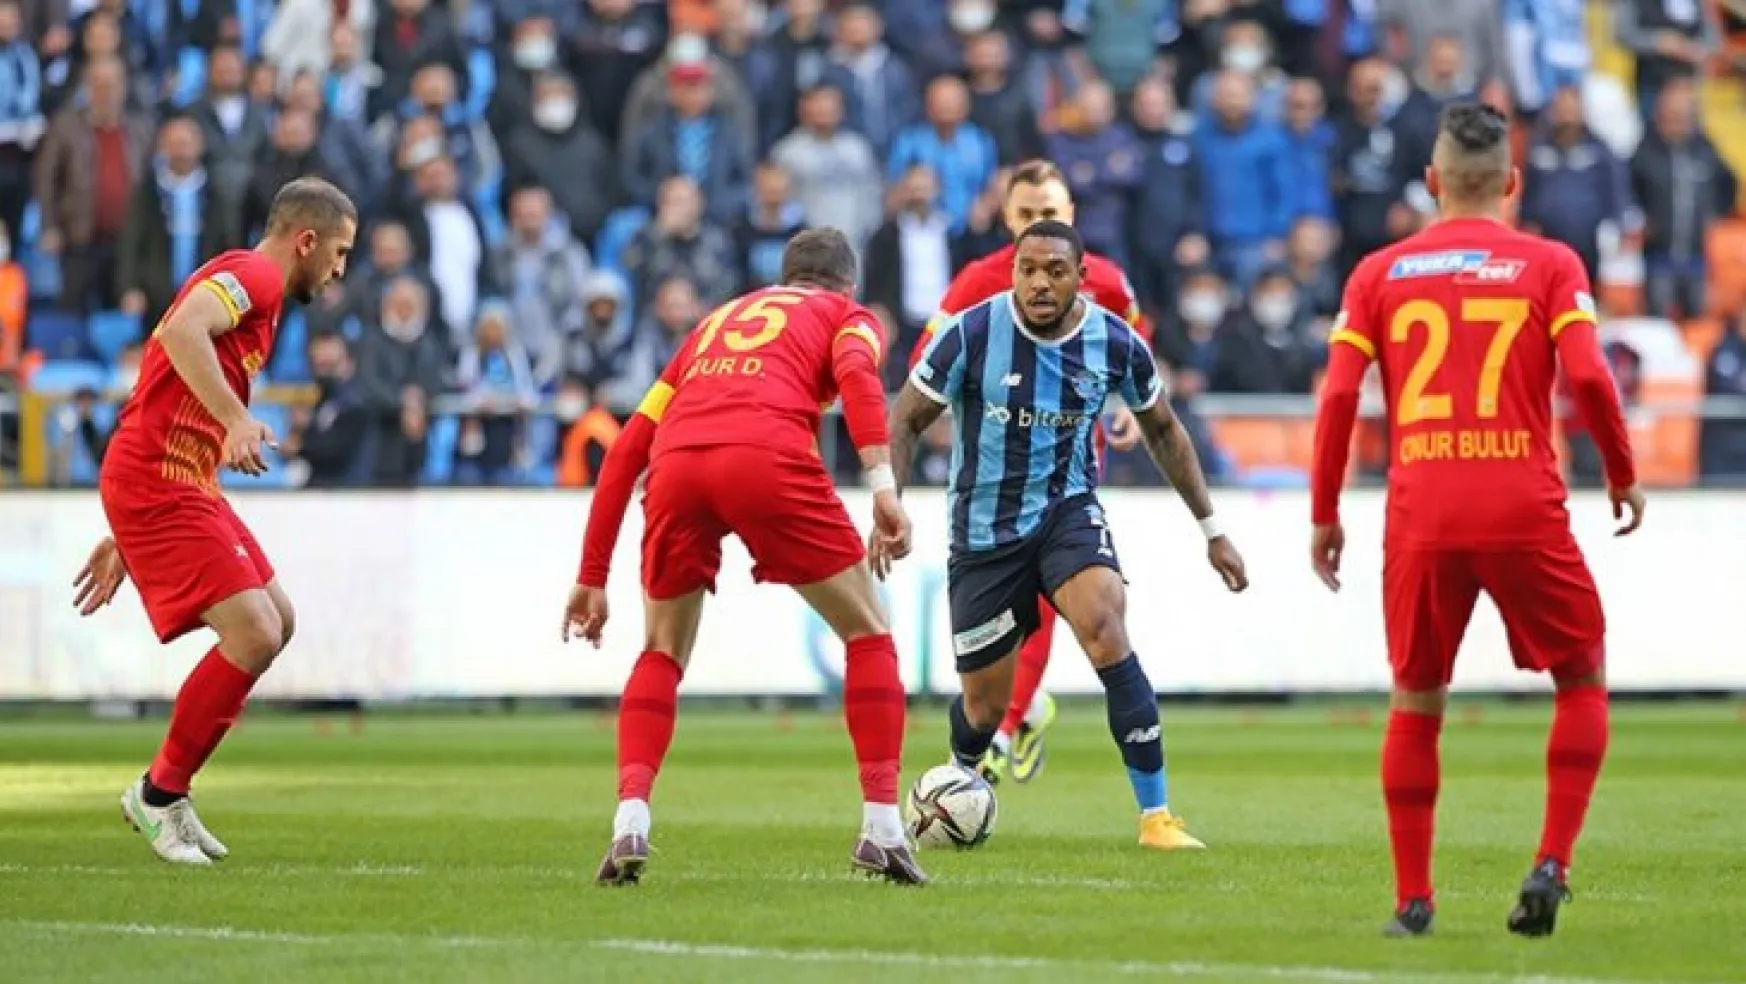 SON DAKİKA: Yukatel Kayserispor - Medipol Başakşehir maçının saati değişti